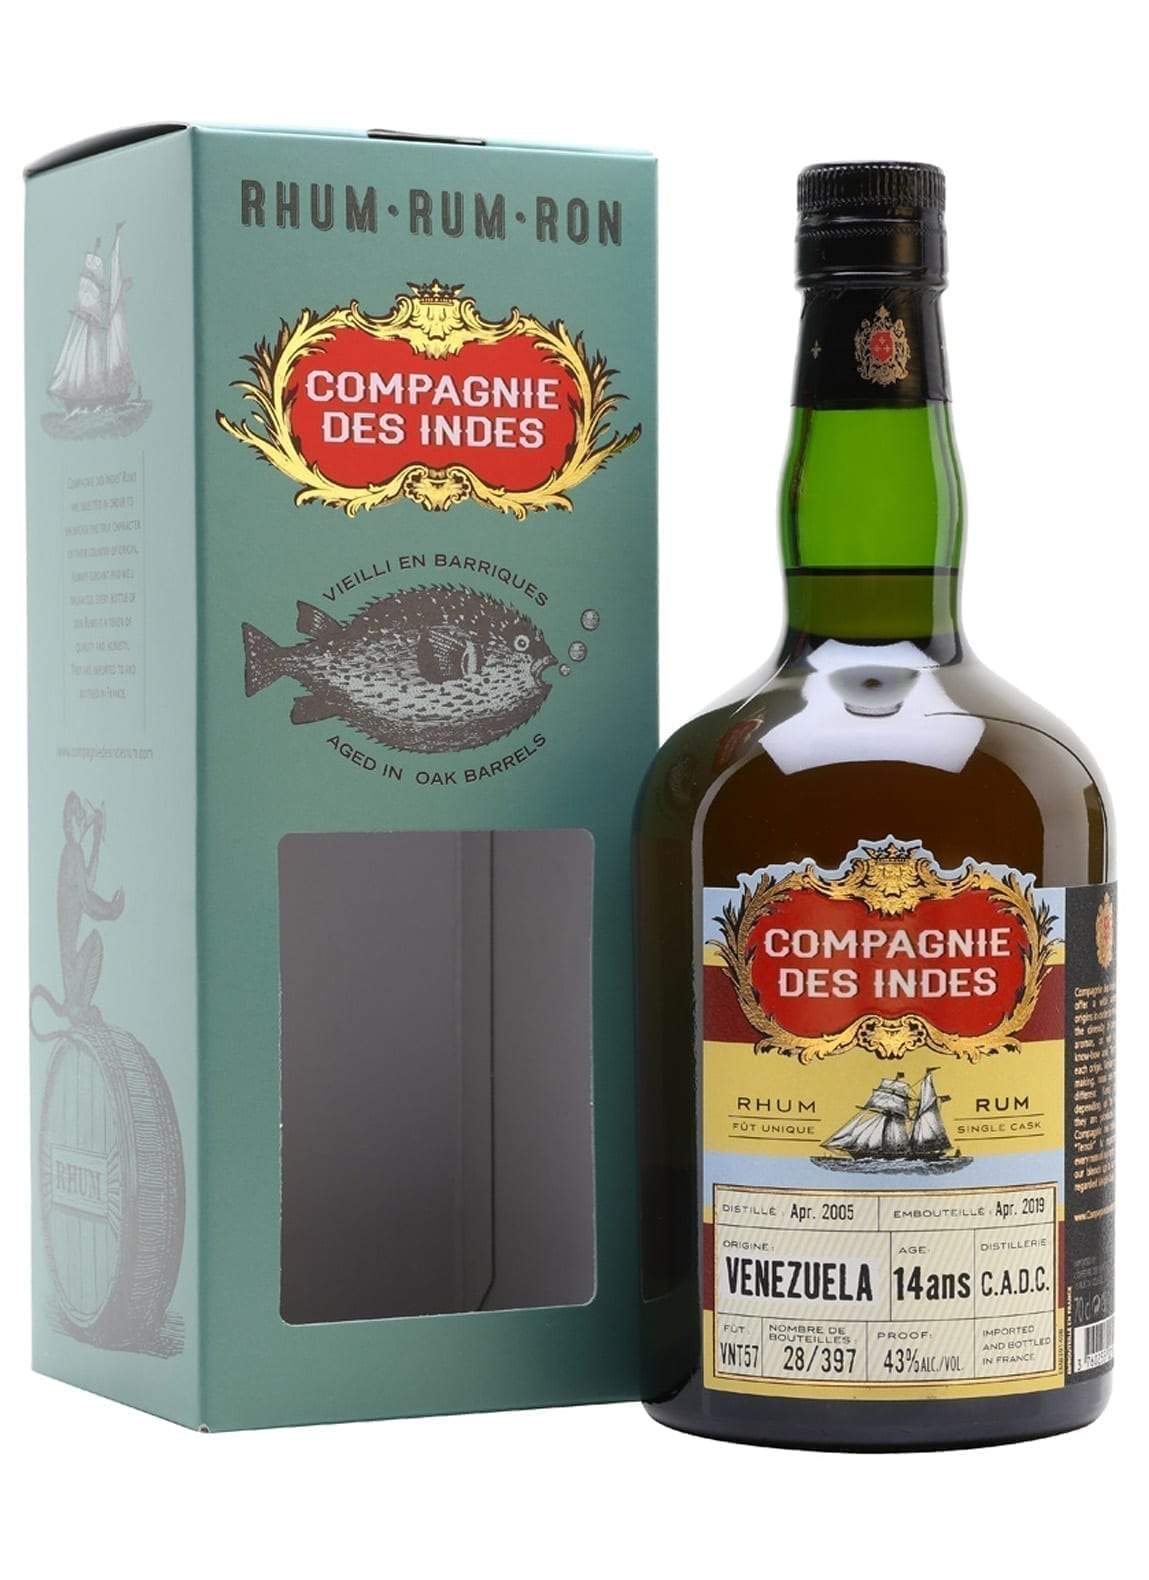 Compagnie des Indes Rum Venezuela 14 years 43% 700ml | Rum | Shop online at Spirits of France